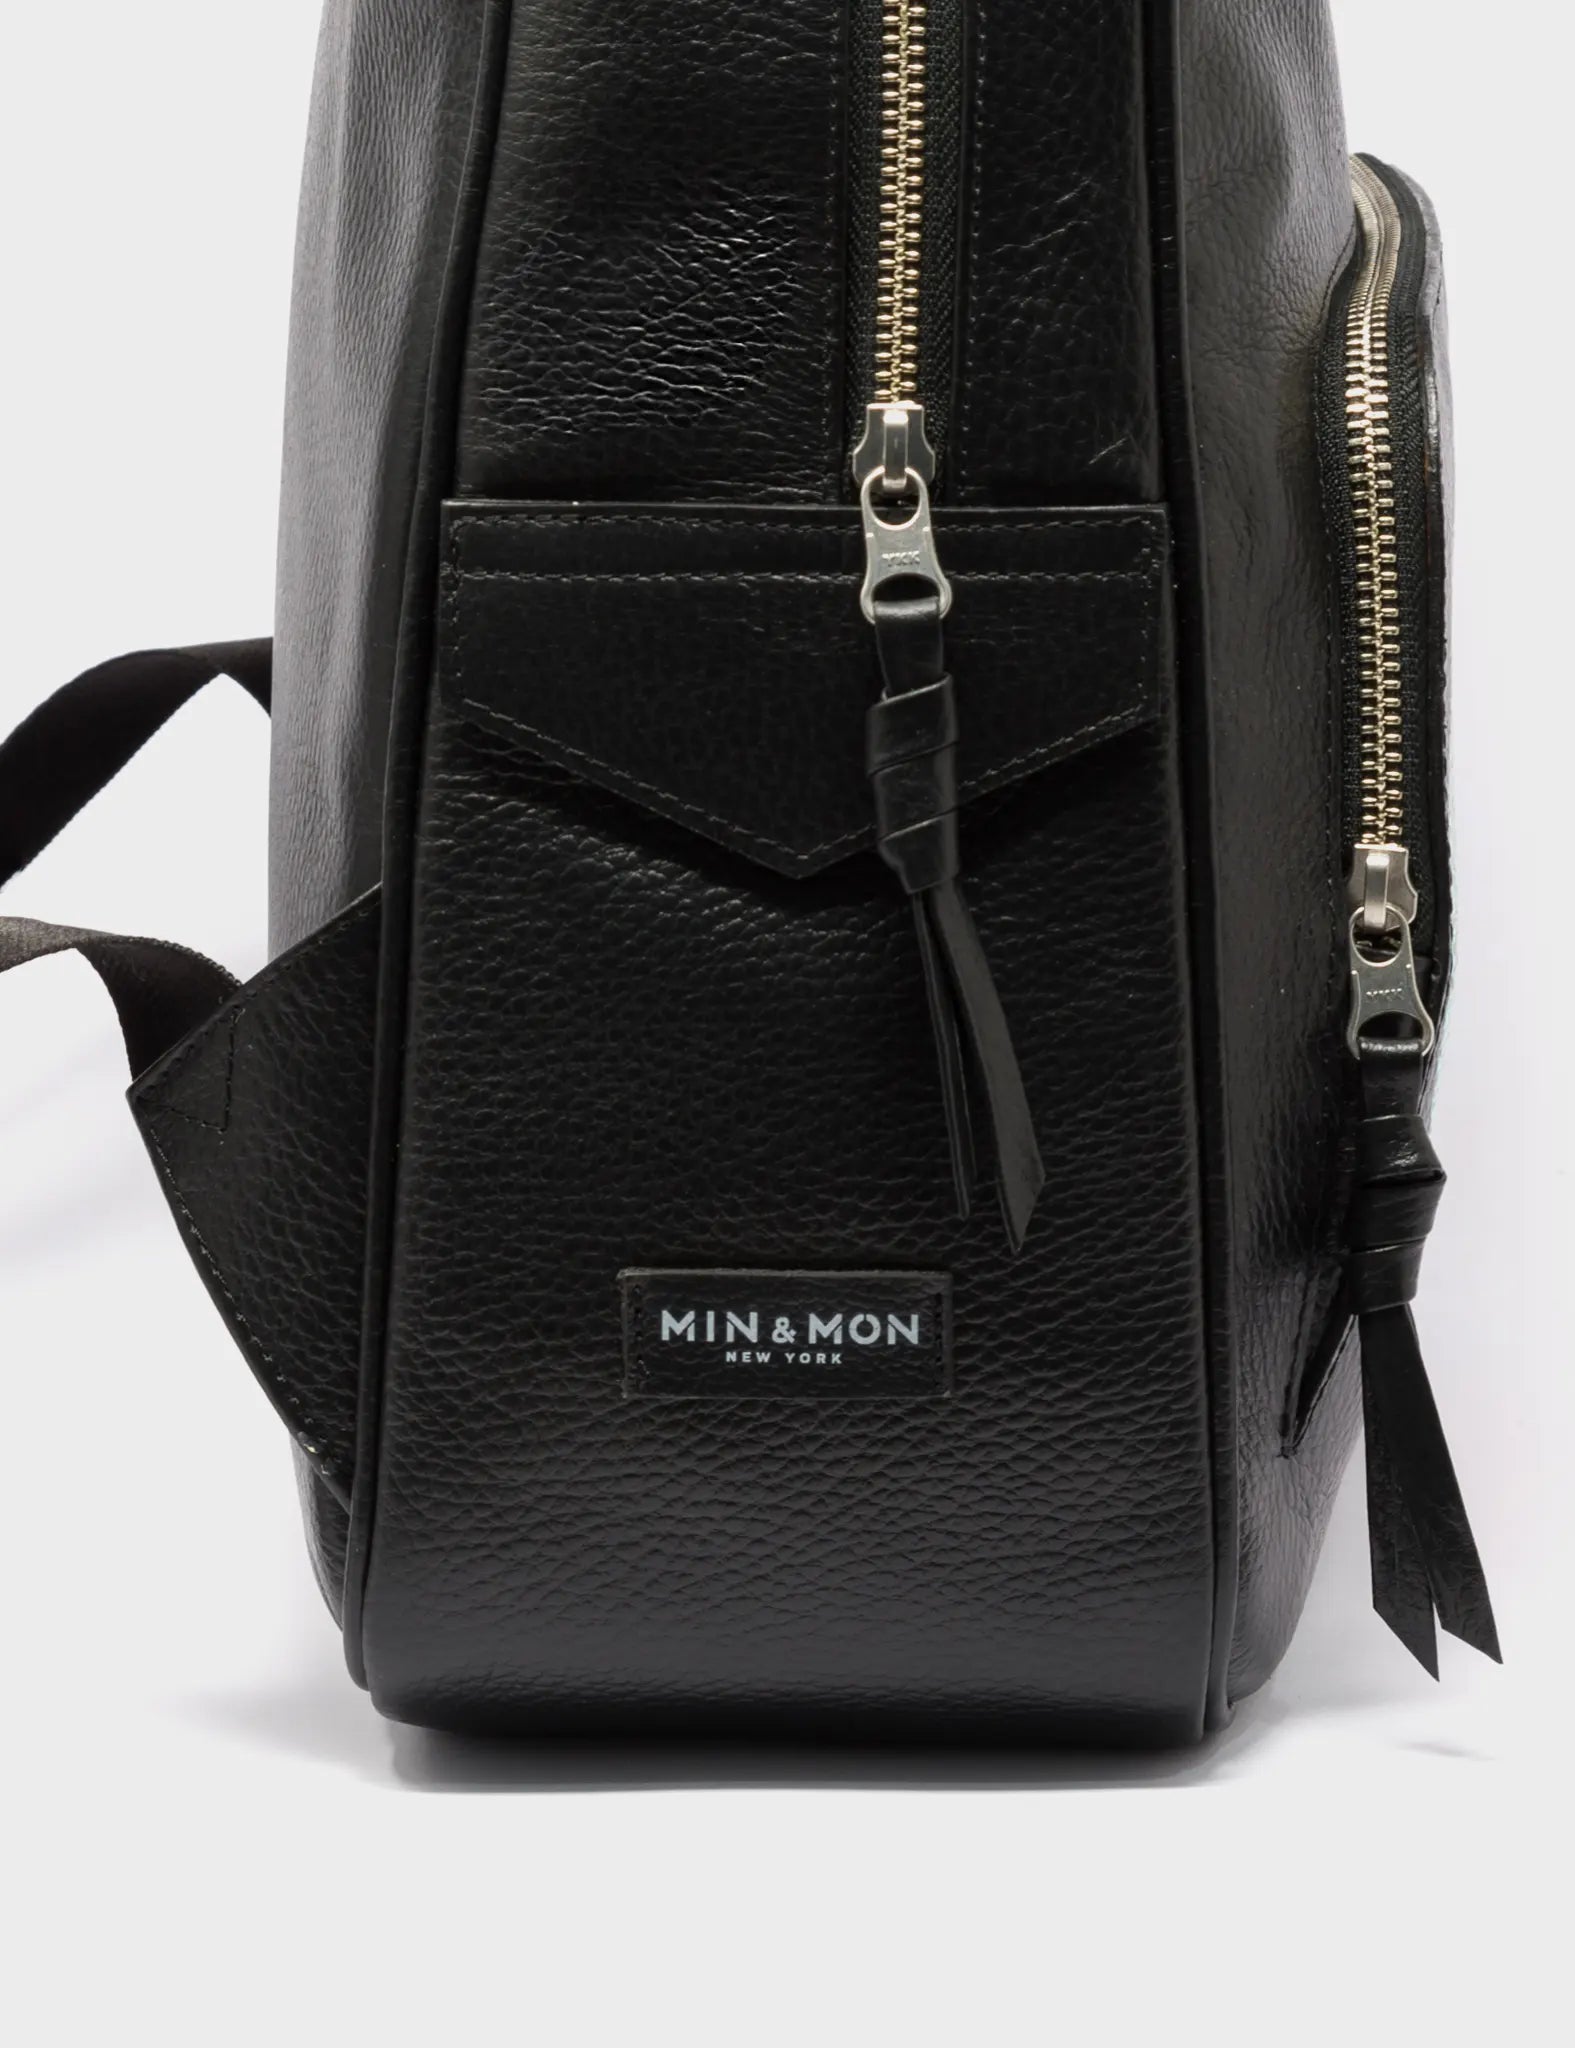 Black Leather Backpack Medium - Tiger and Snake Print - Side 